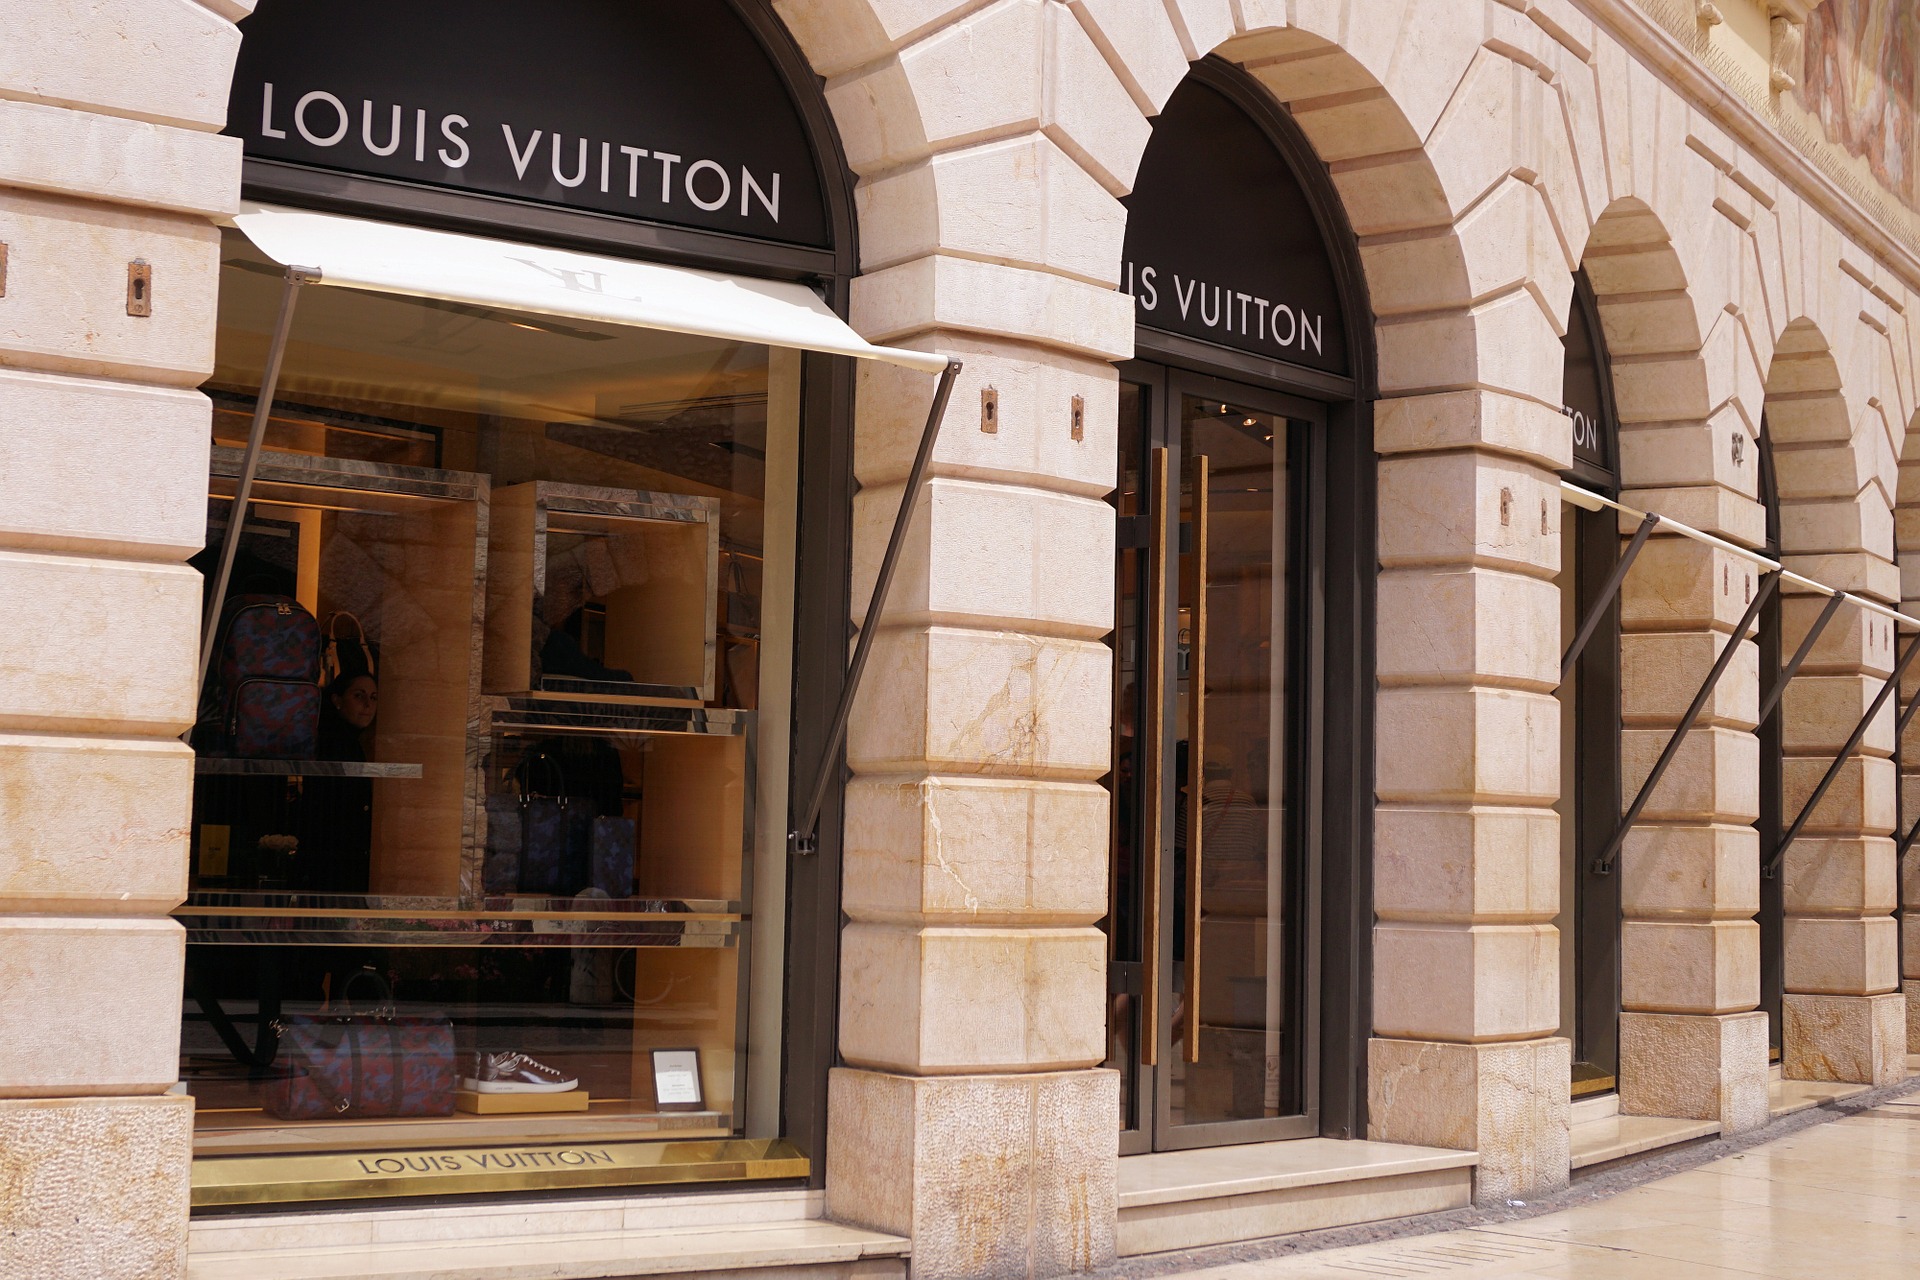 Grupo que controla Louis Vuitton vai distribuir álcool gel